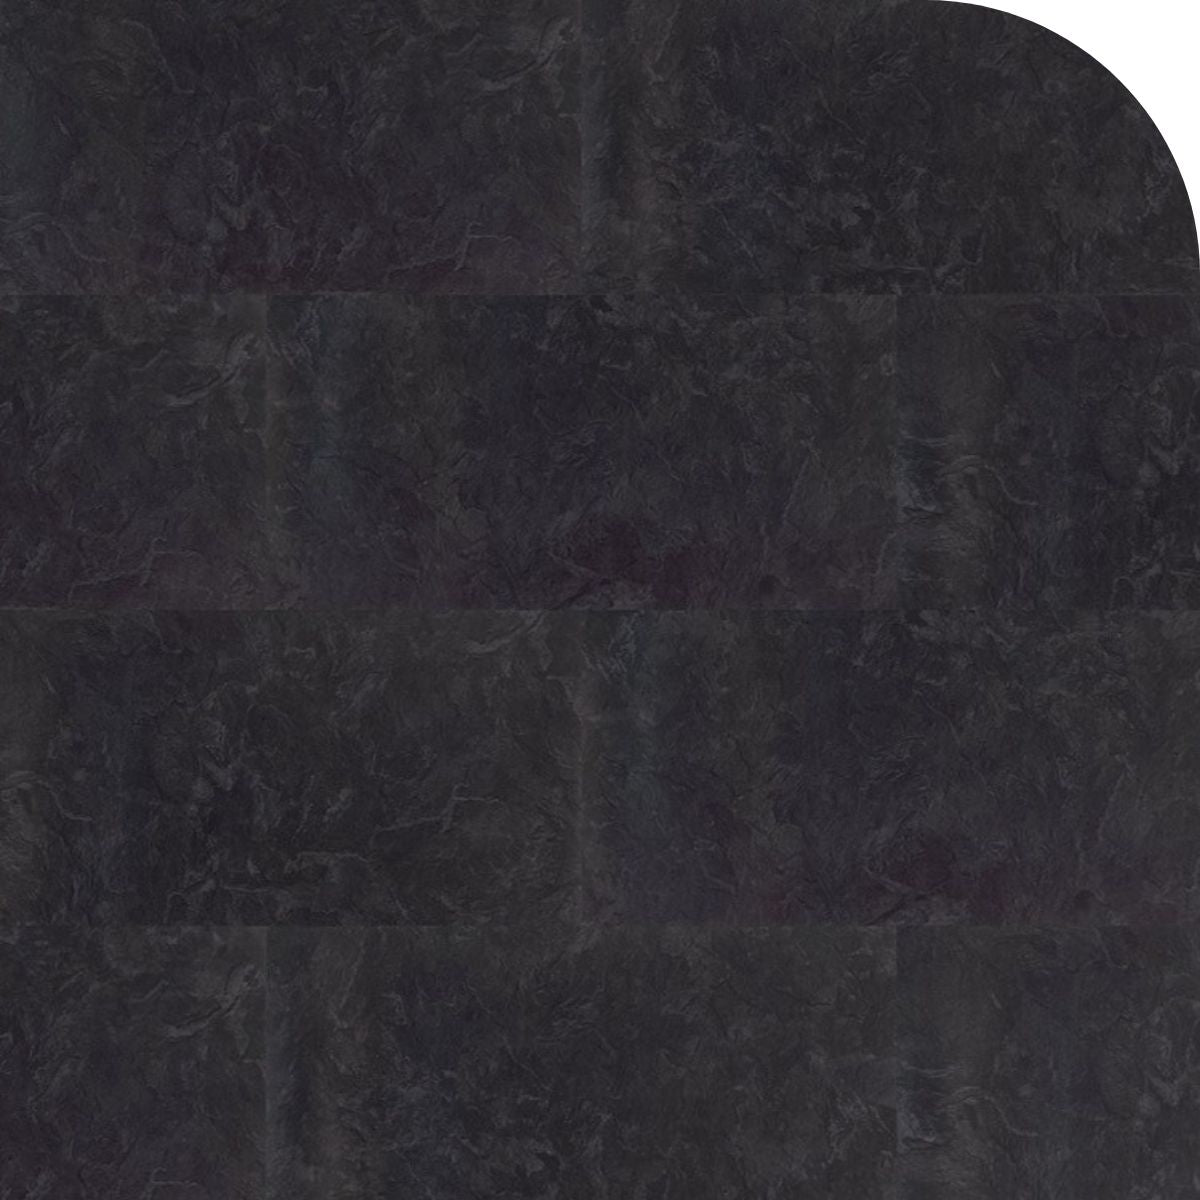 Barth und Co. - SPC Designboden Brick Design - Klick-Vinylboden inkl. Trittschalldämmung - Slate Black - Fliesenoptik - Frontansicht